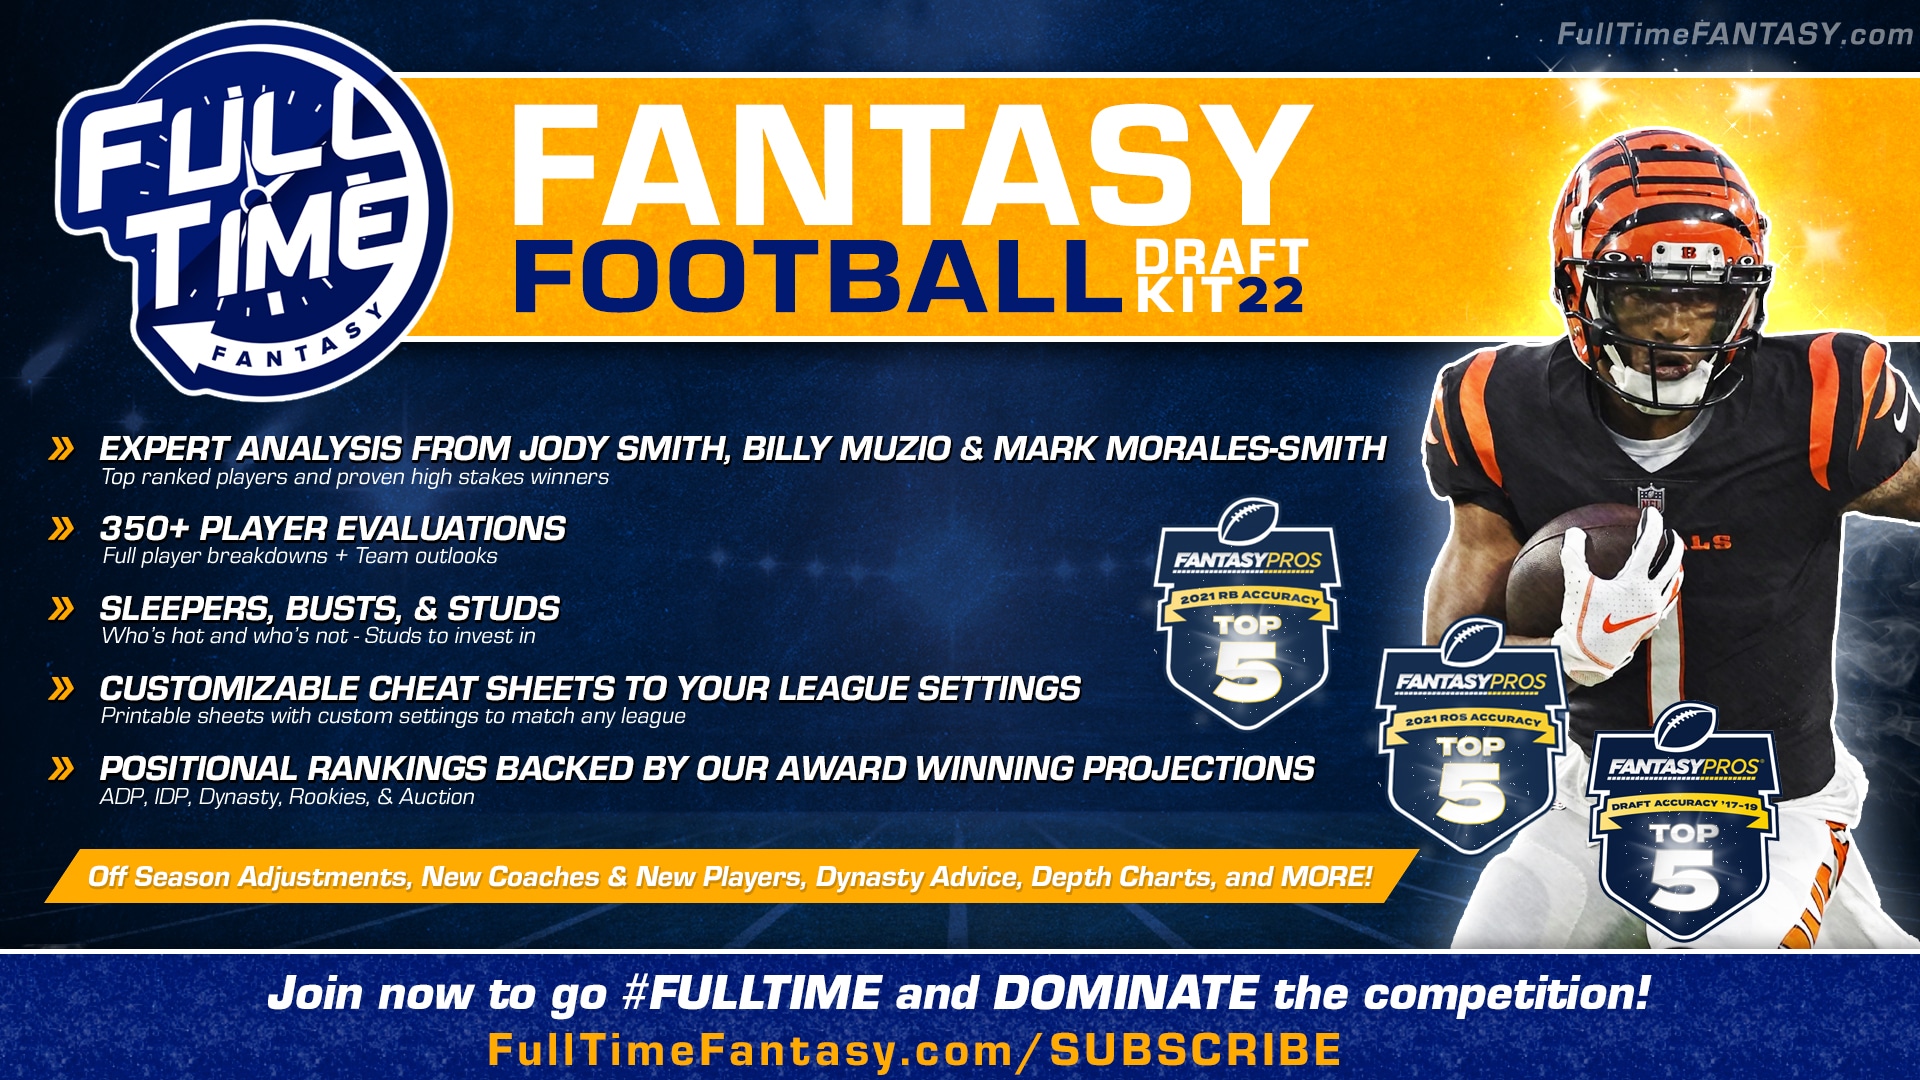 2022 Fantasy Football Draft Kit - FullTime Fantasy